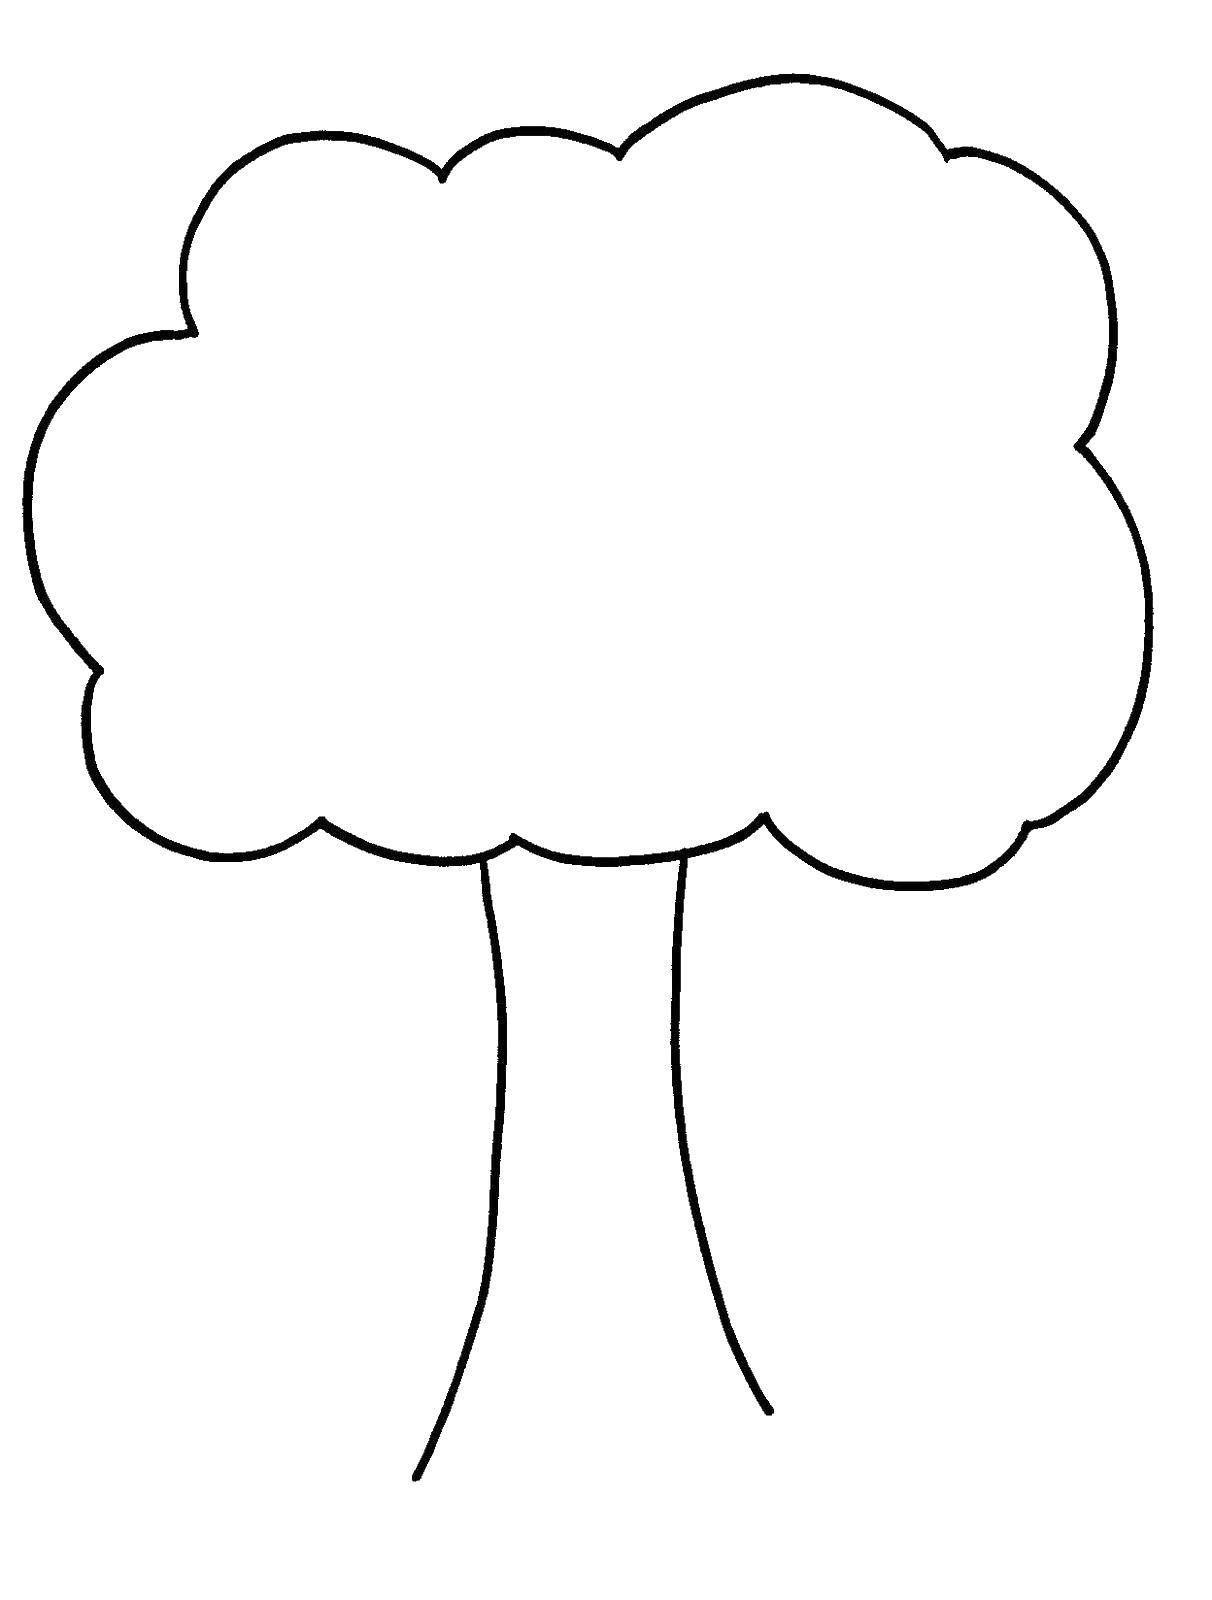 Название: Раскраска Деревце. Категория: Семейное дерево. Теги: дерево, крона, листья.